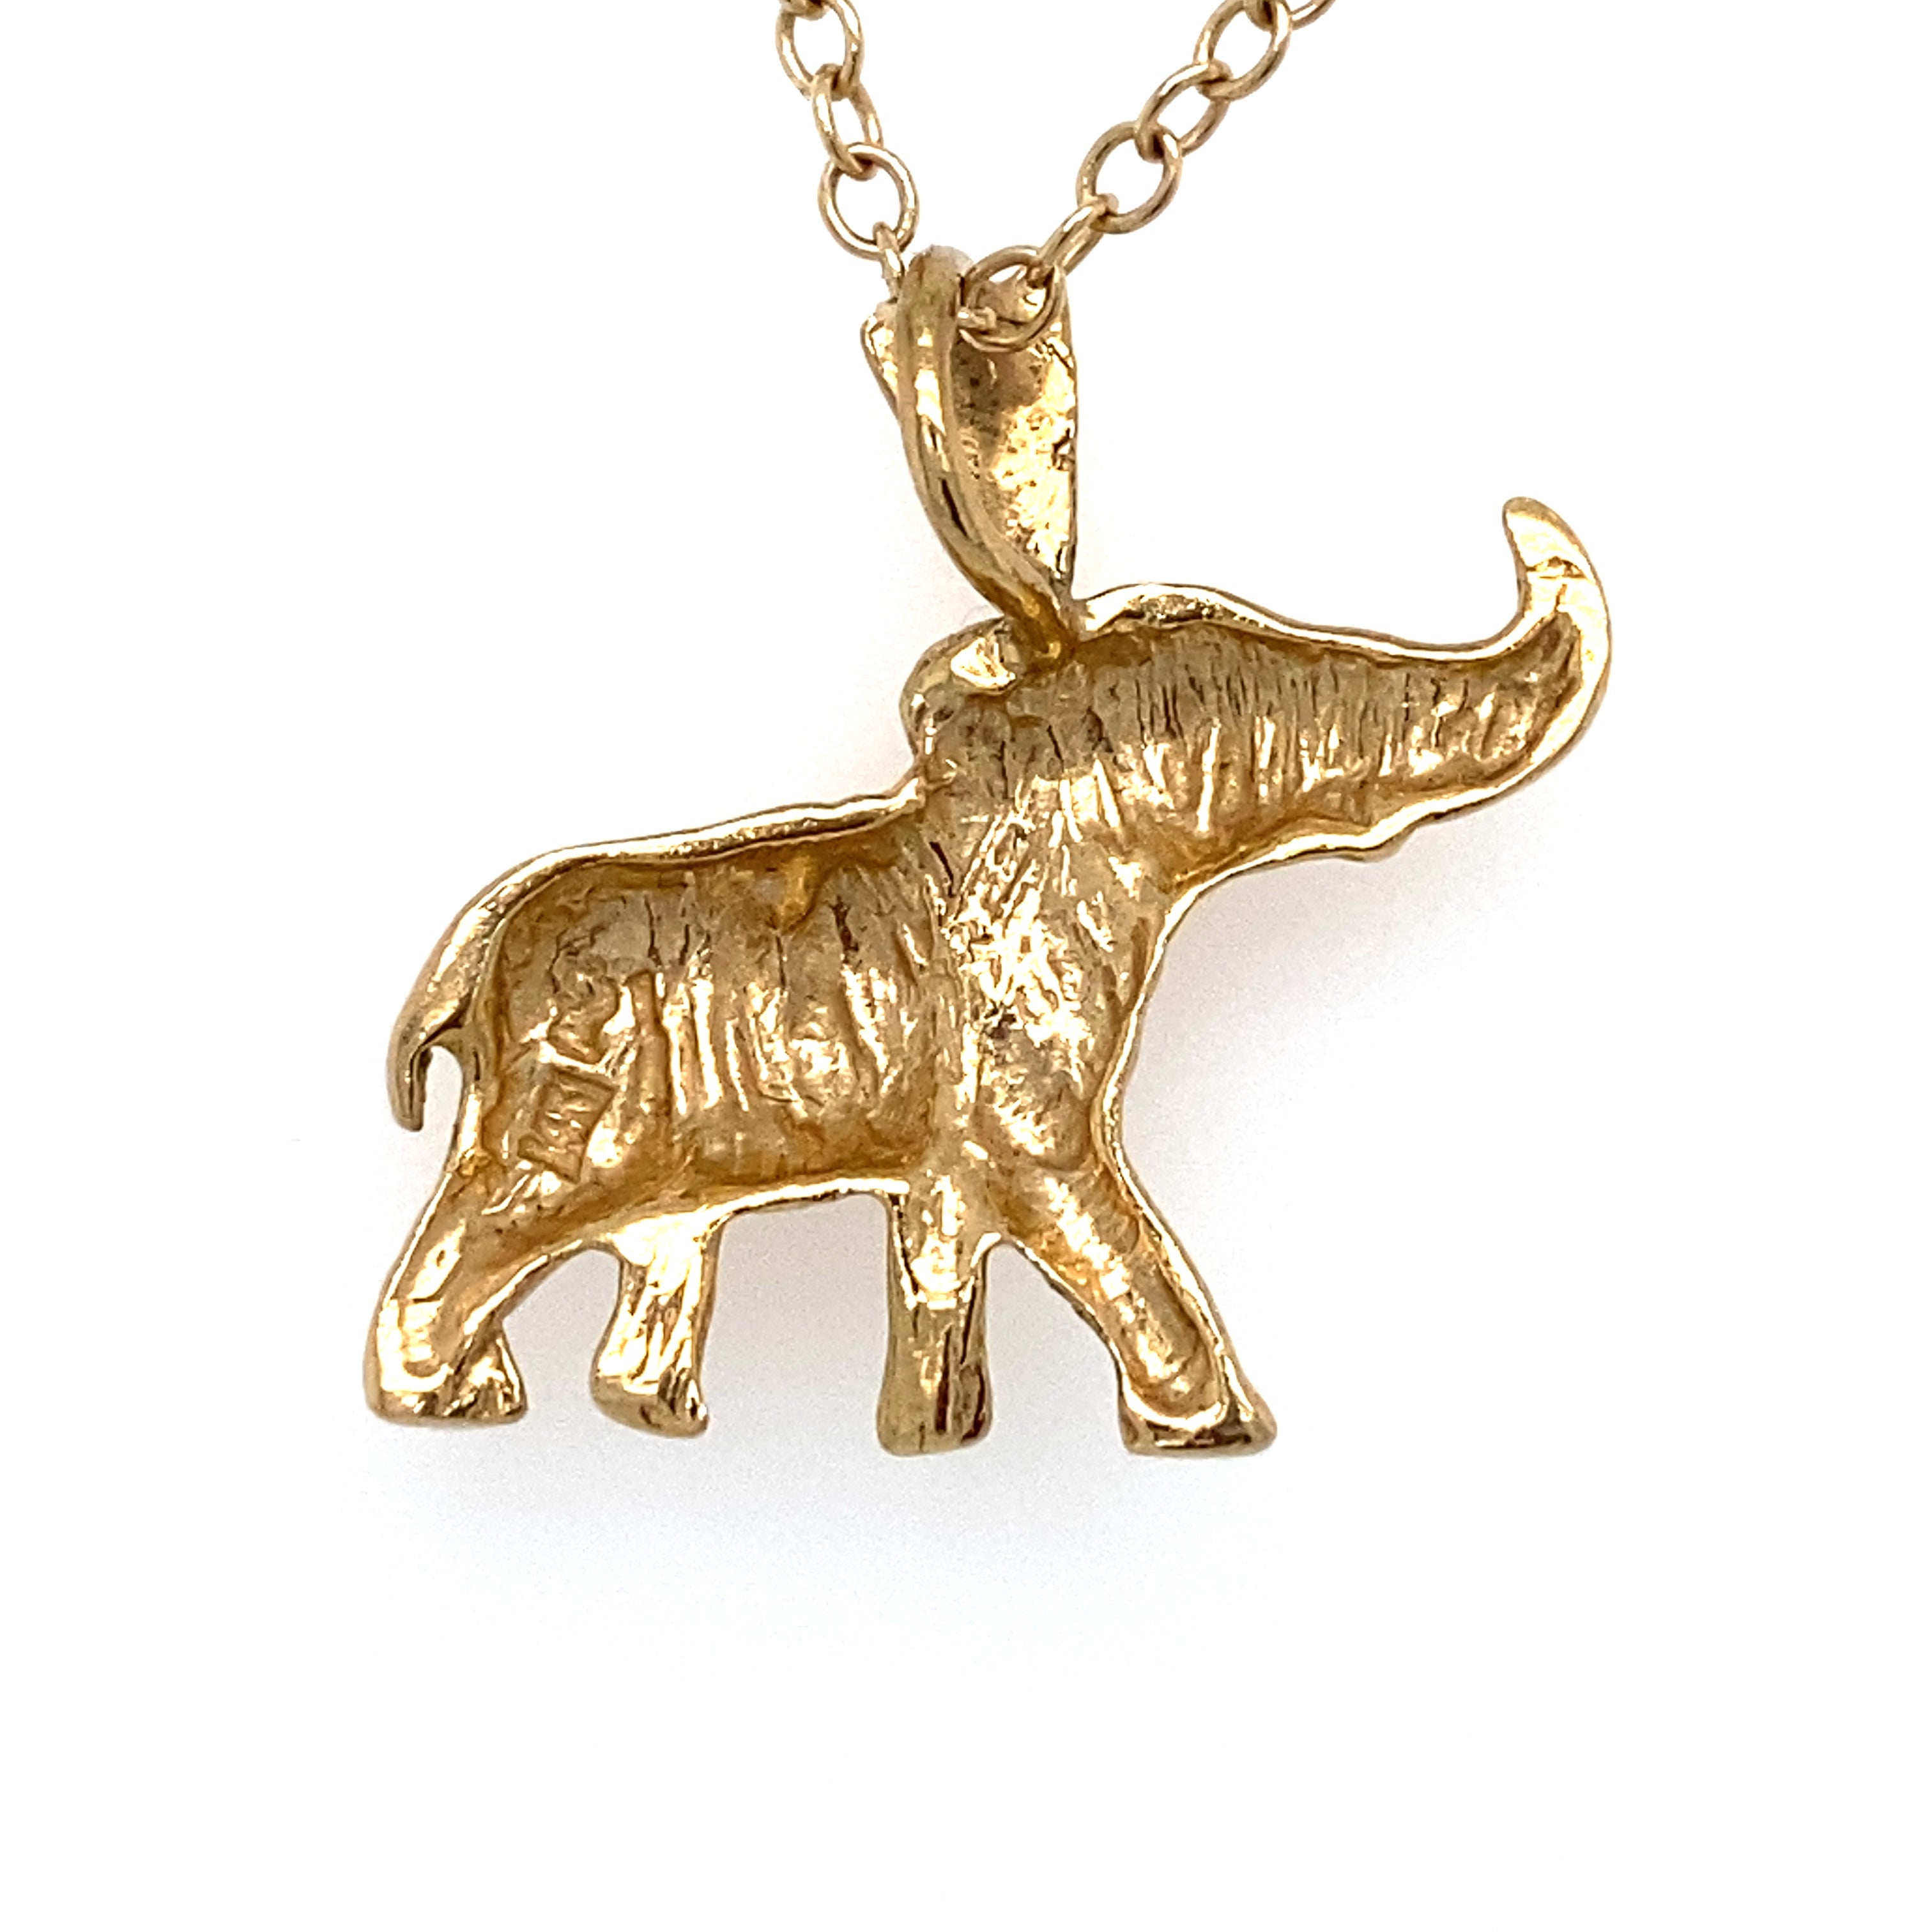 Share 72+ 10k gold elephant bracelet best - 3tdesign.edu.vn